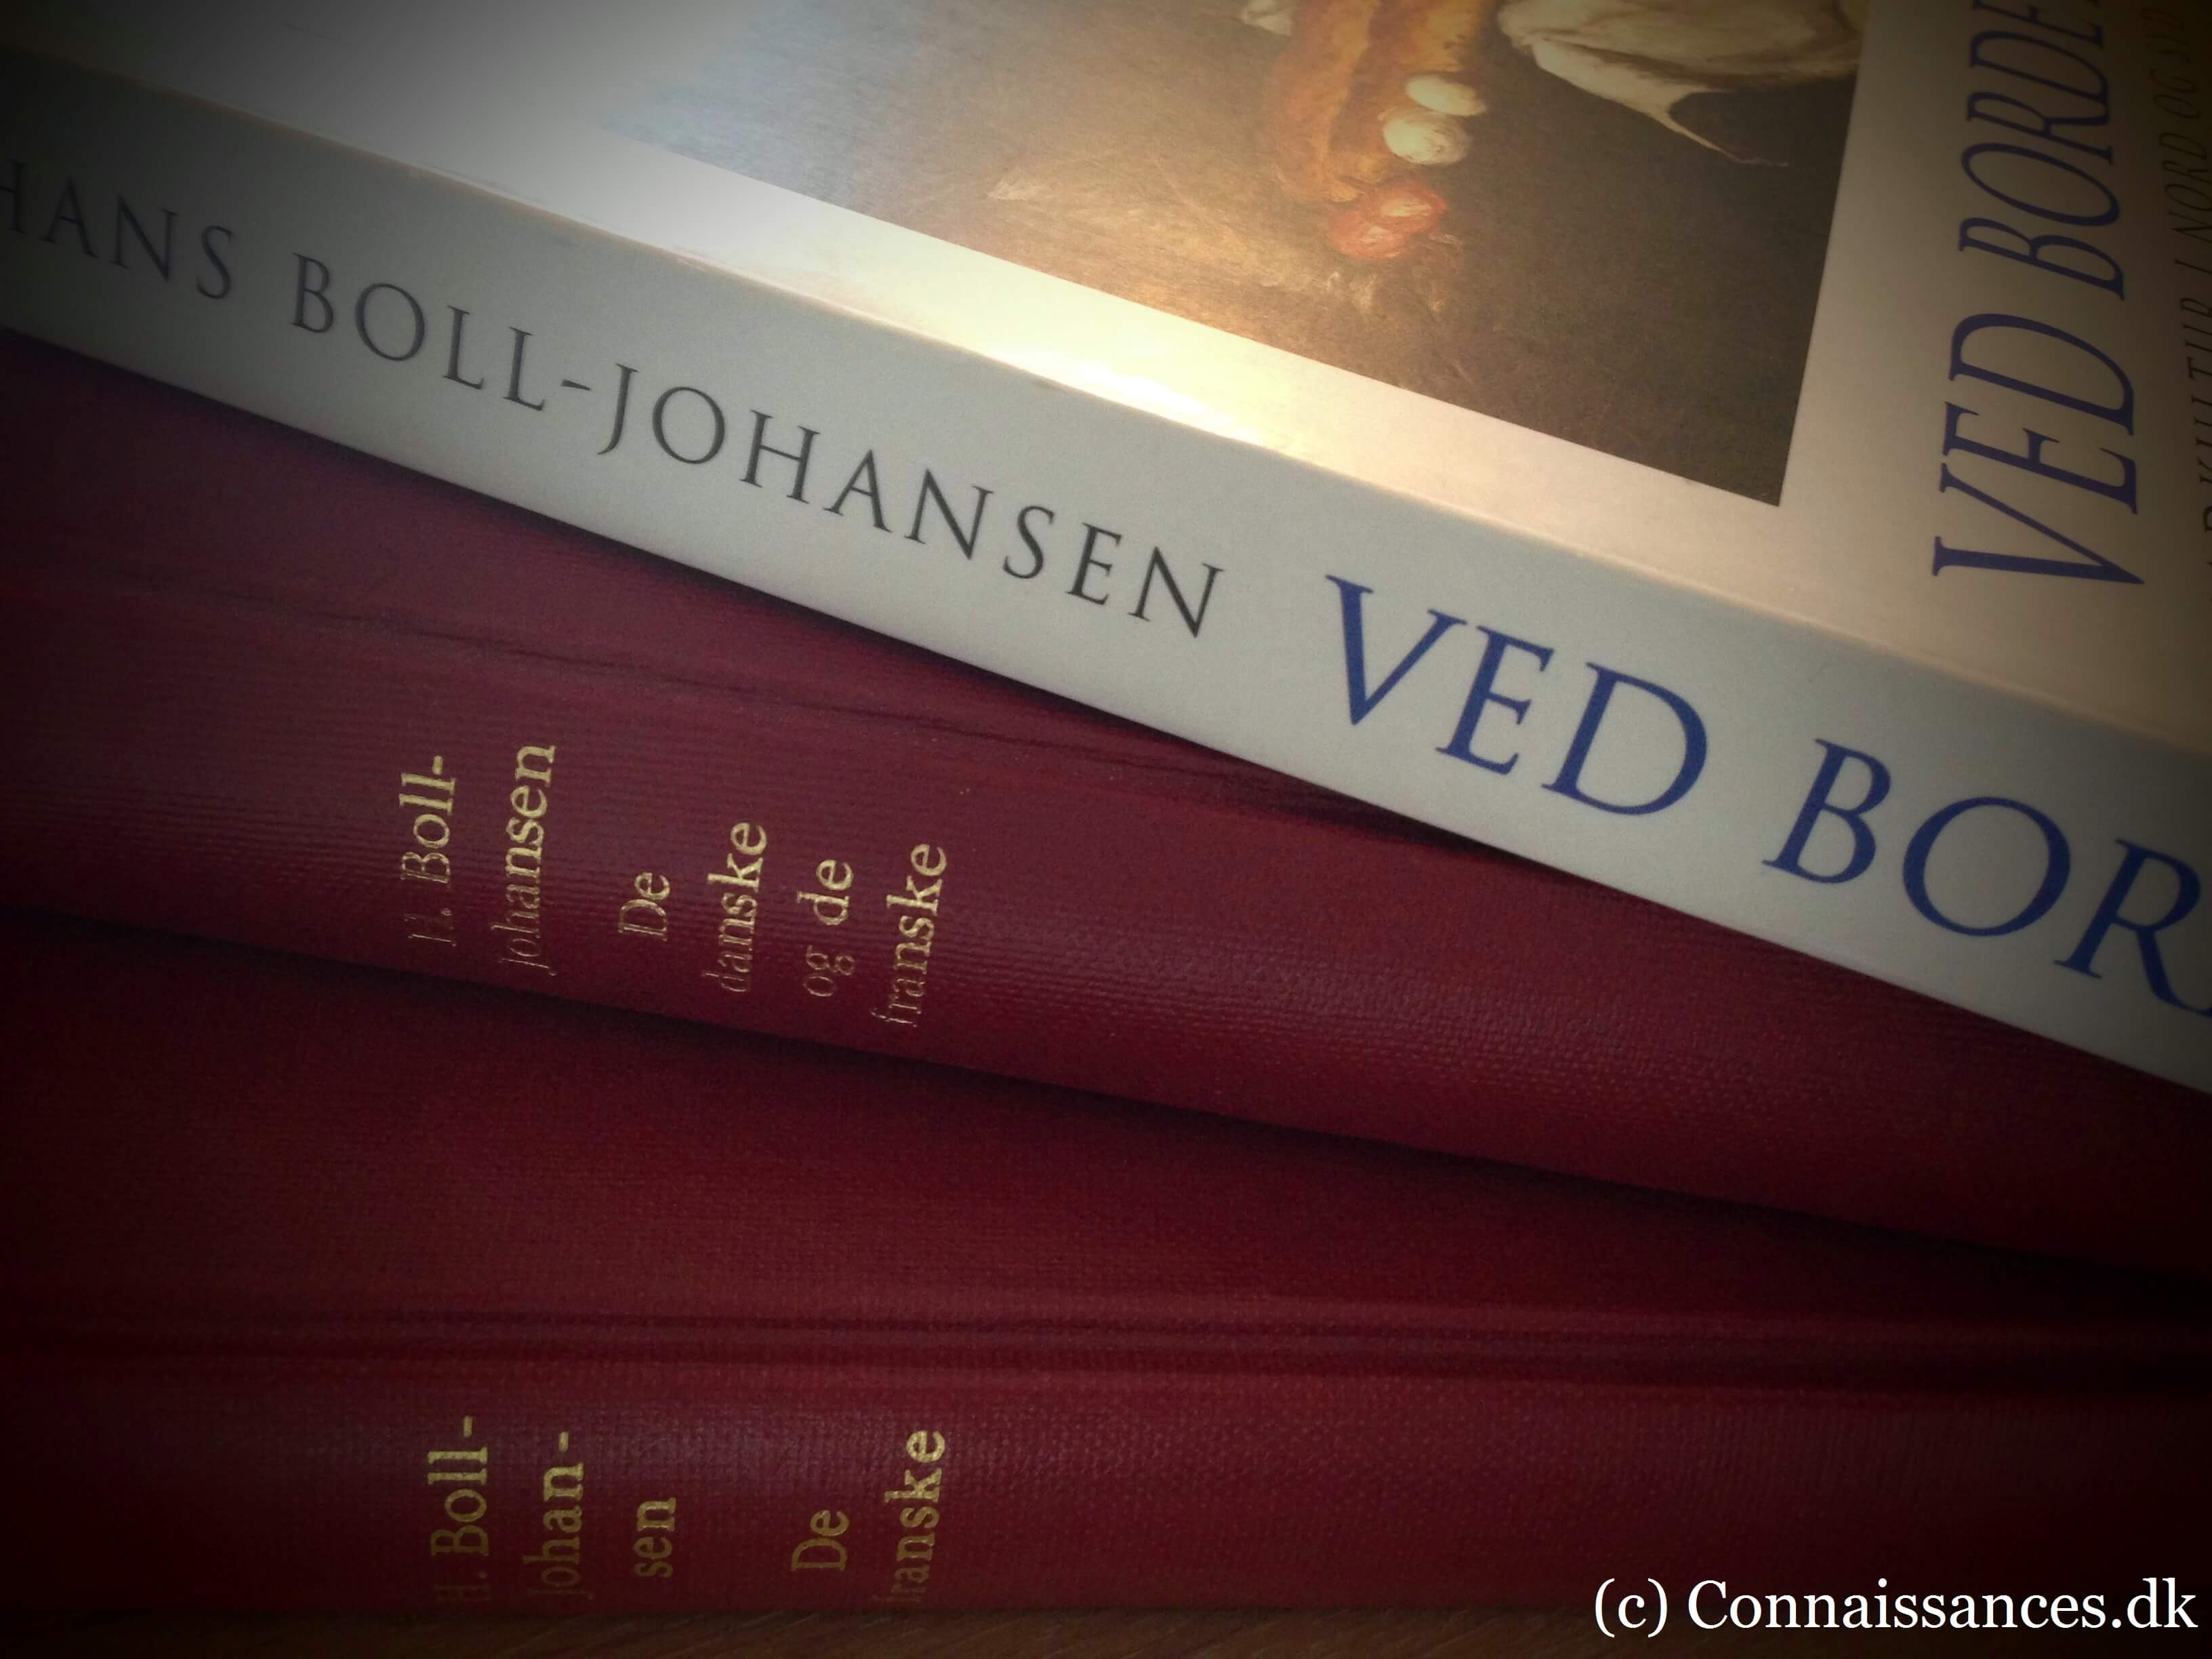 Boll-Johansenx3 frankofile bøger